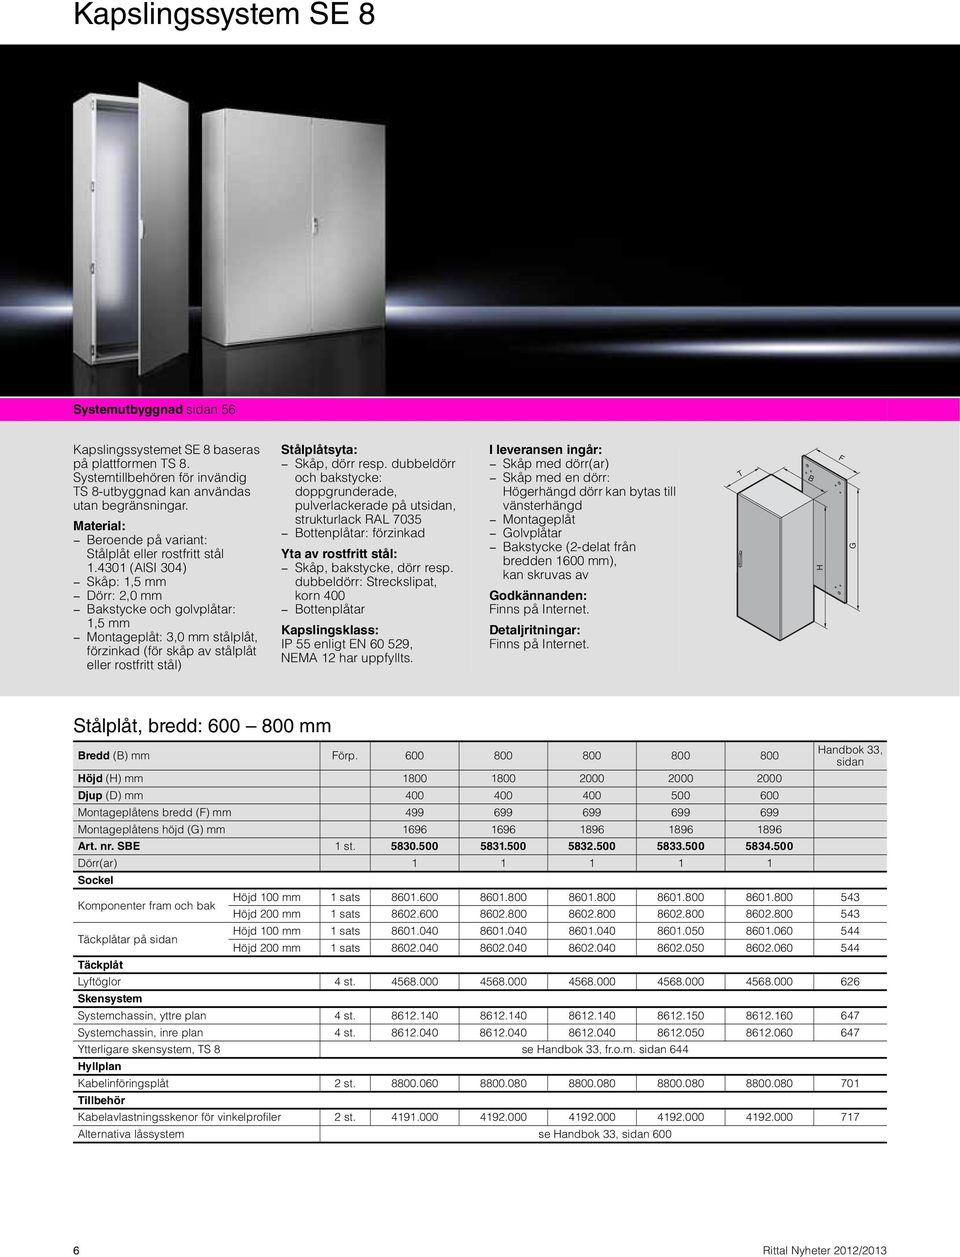 4301 (AlSI 304) Skåp: 1,5 mm Dörr: 2,0 mm Bakstycke och golvplåtar: 1,5 mm Montageplåt: 3,0 mm stålplåt, förzinkad (för skåp av stålplåt eller rostfritt stål) Stålplåtsyta: Skåp, dörr resp.